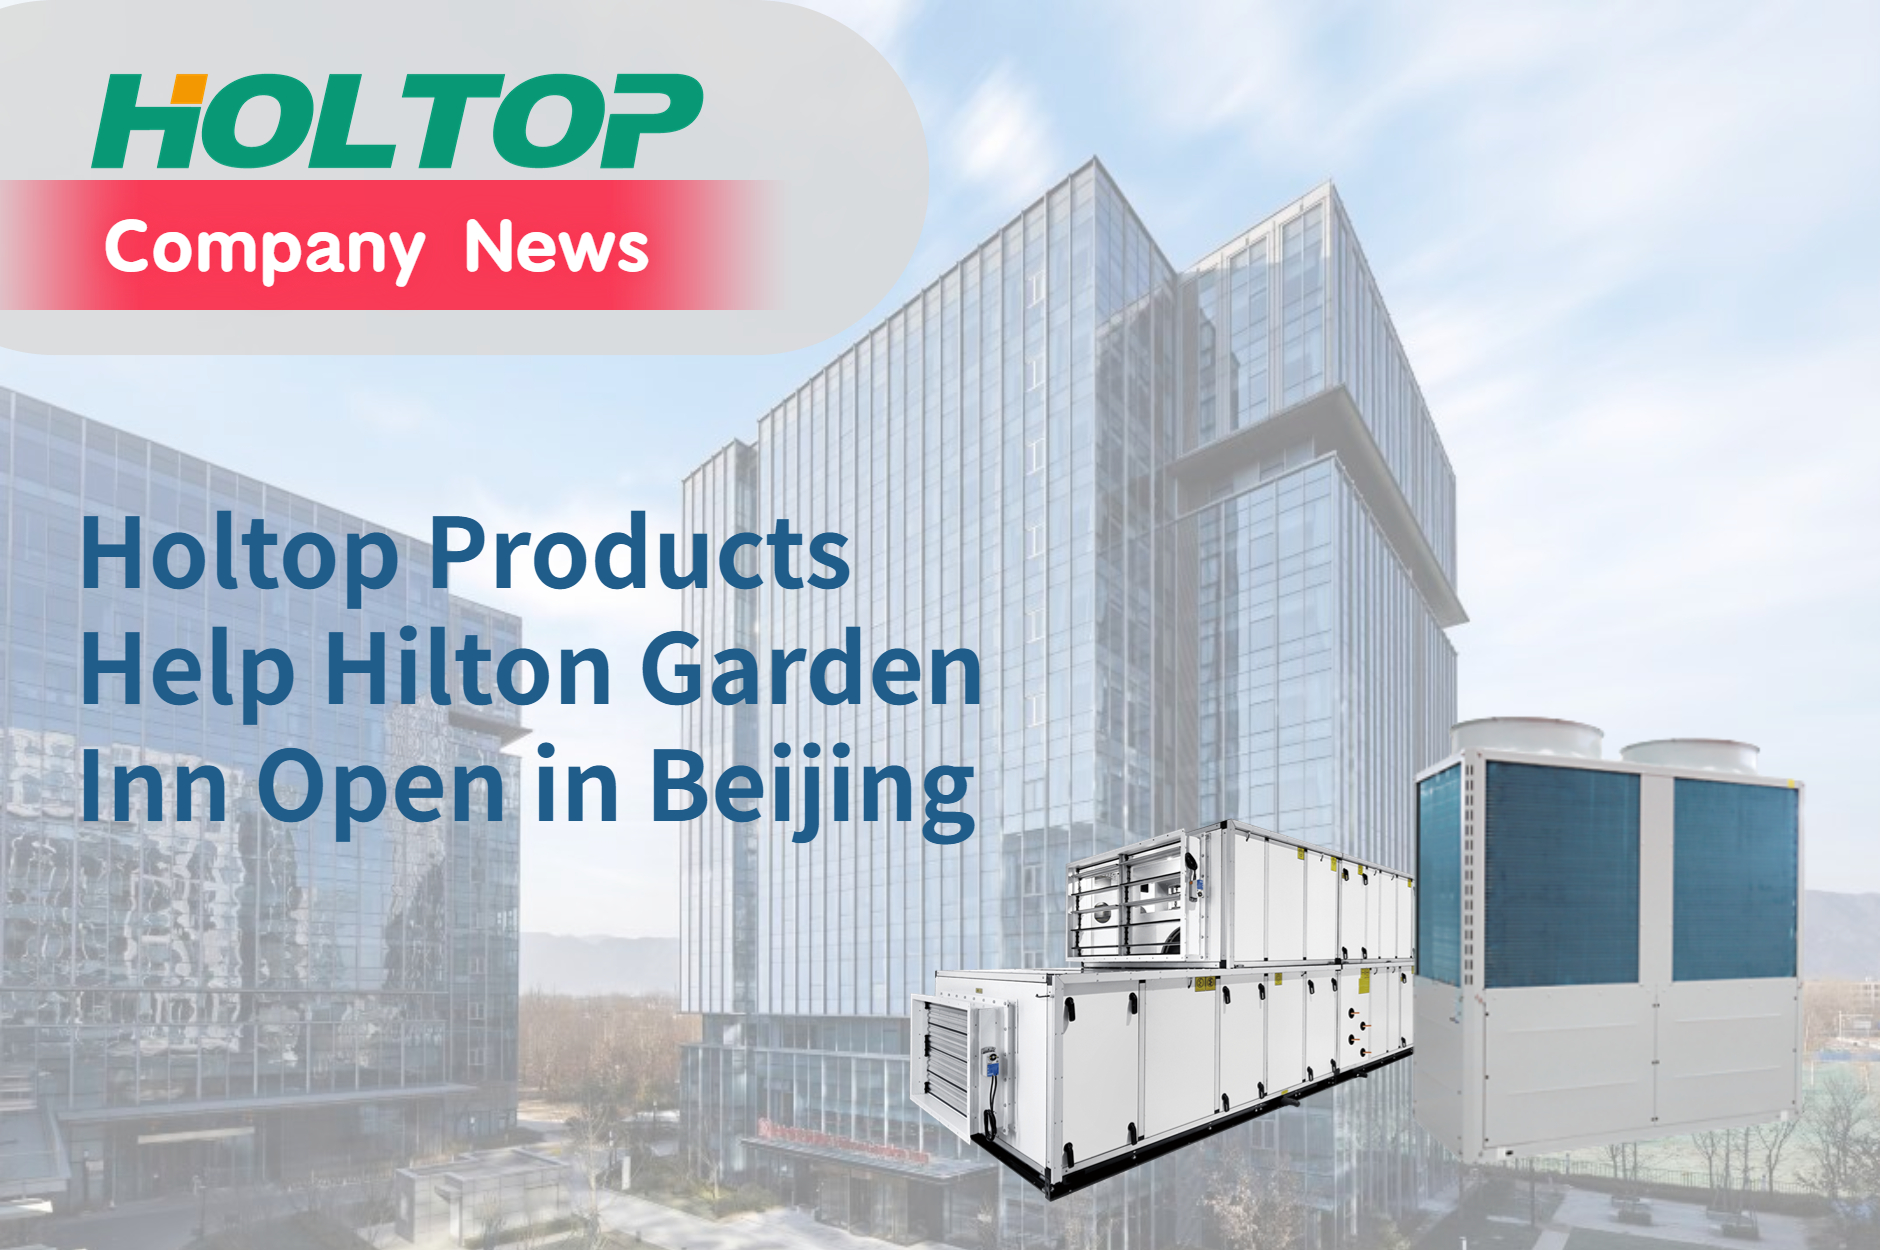 Holtop-producten helpen Hilton Garden Inn openen in Beijing